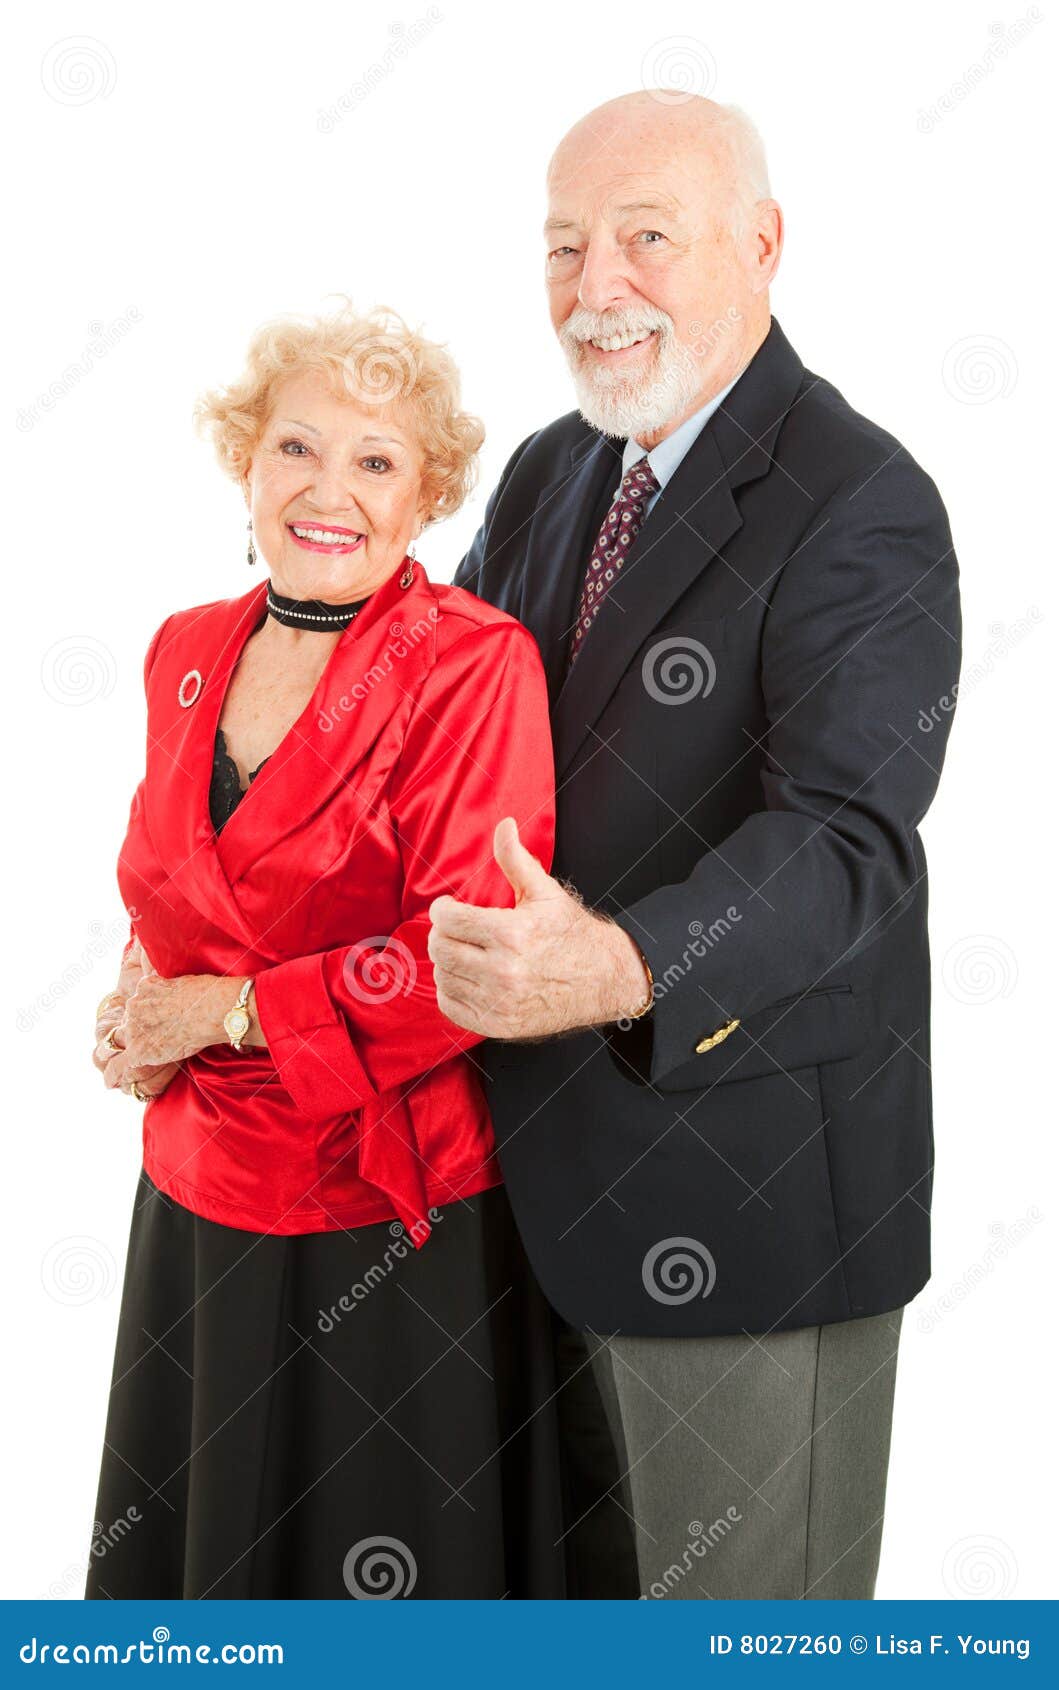 Tanzen-Ältere greift oben ab. Älterer Mann gibt Daumen herauf Zeichen, mit einer schönen älteren Frau zu tanzen. (Anmerkung zum Rezensenten: aufgetragene silk Beschaffenheit der Bluse kann Kunstprodukten ähneln, aber ist nicht.)